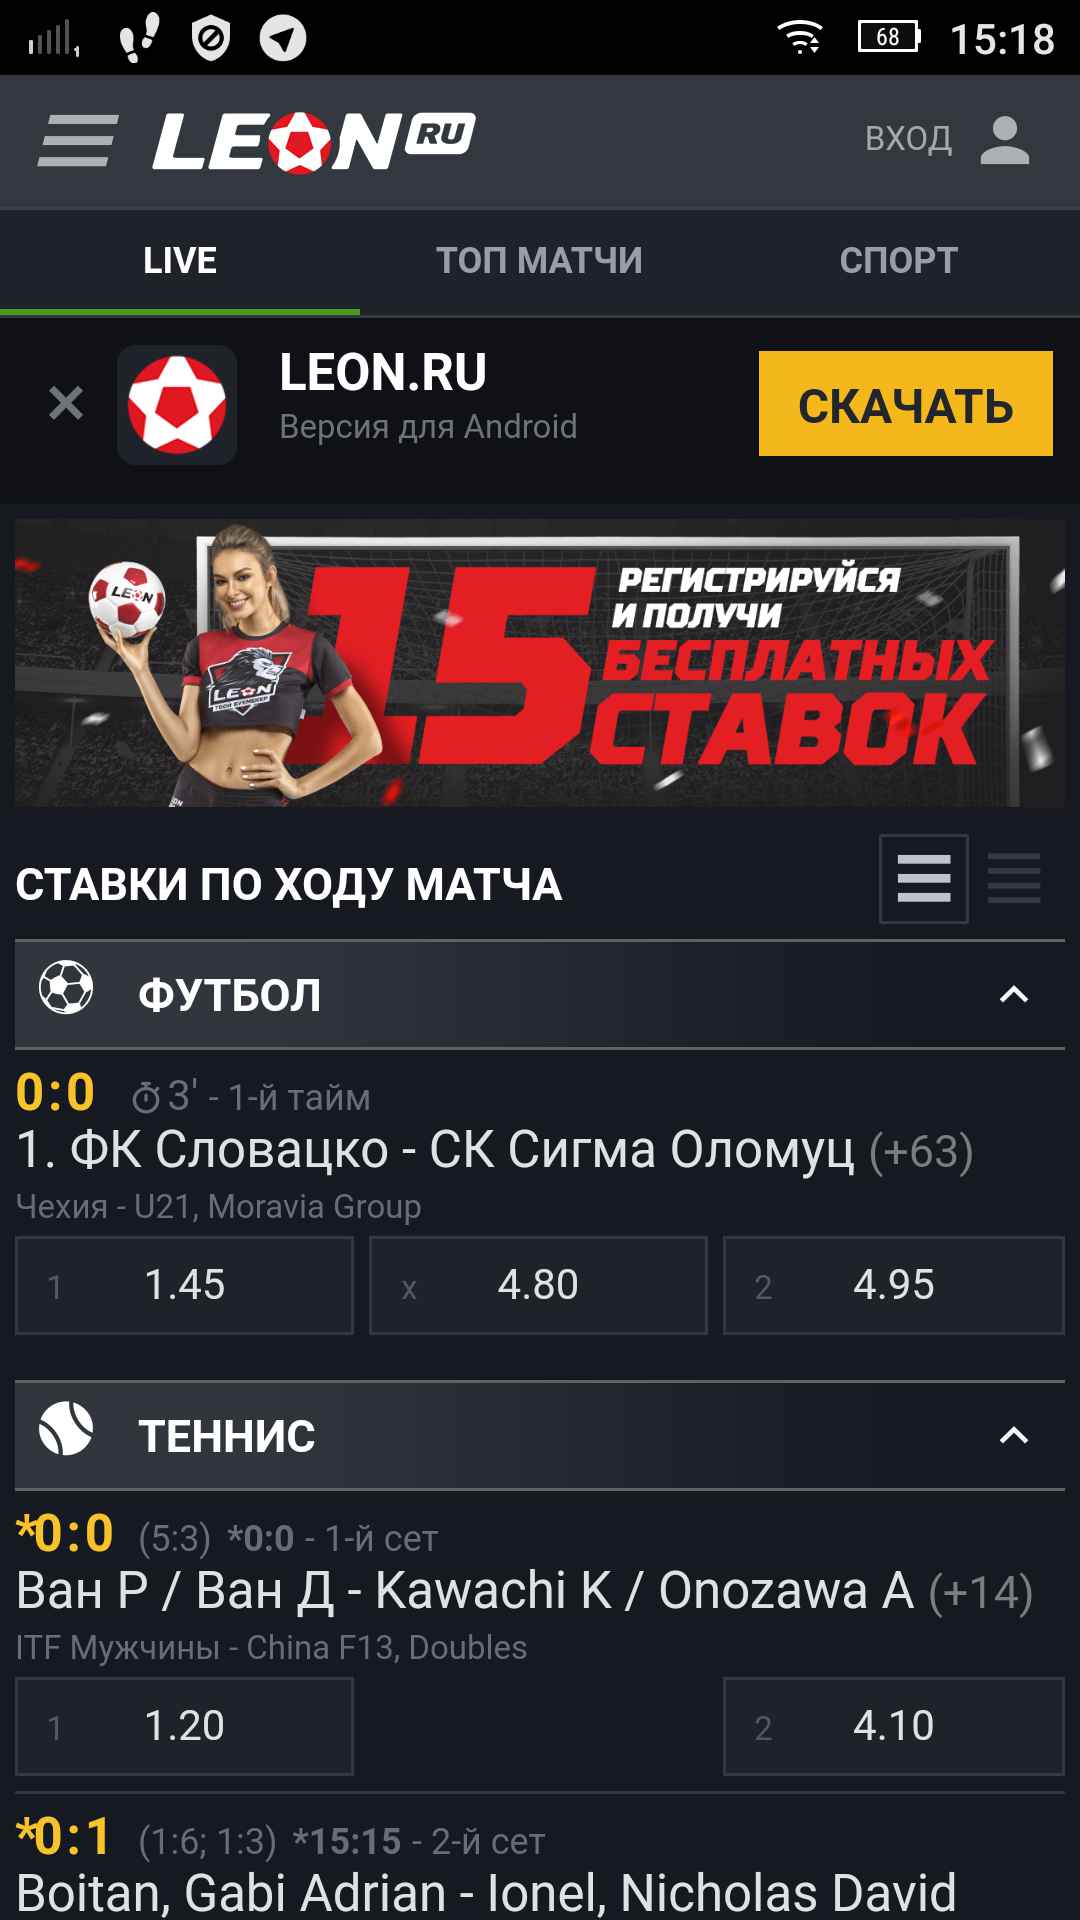 Скачать ставки на спорт леон официальный сайт slotoking первое украинское казино онлайн в интернете